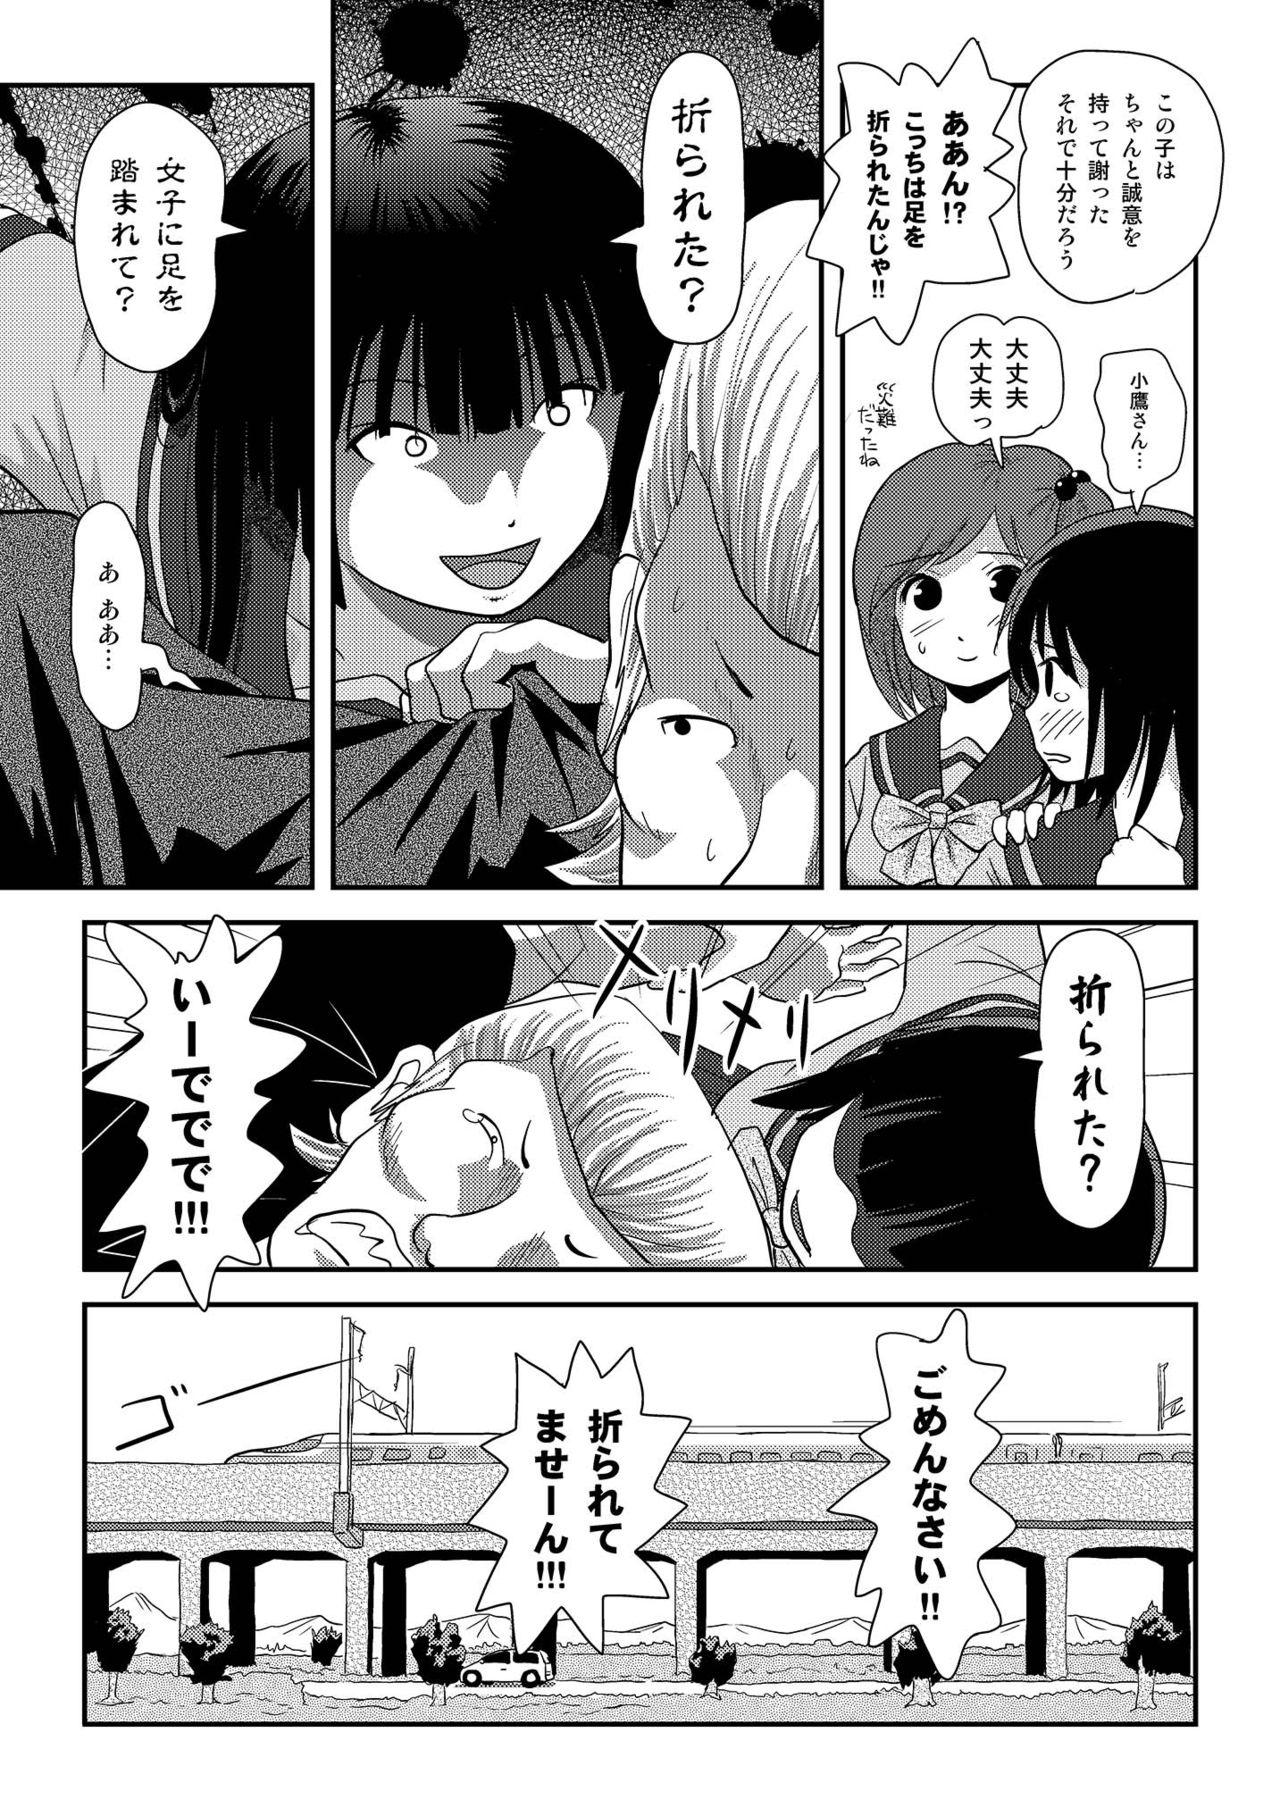 Madura Sakura Kotaka no Roshutsubiyori 6 - Original Macho - Page 9